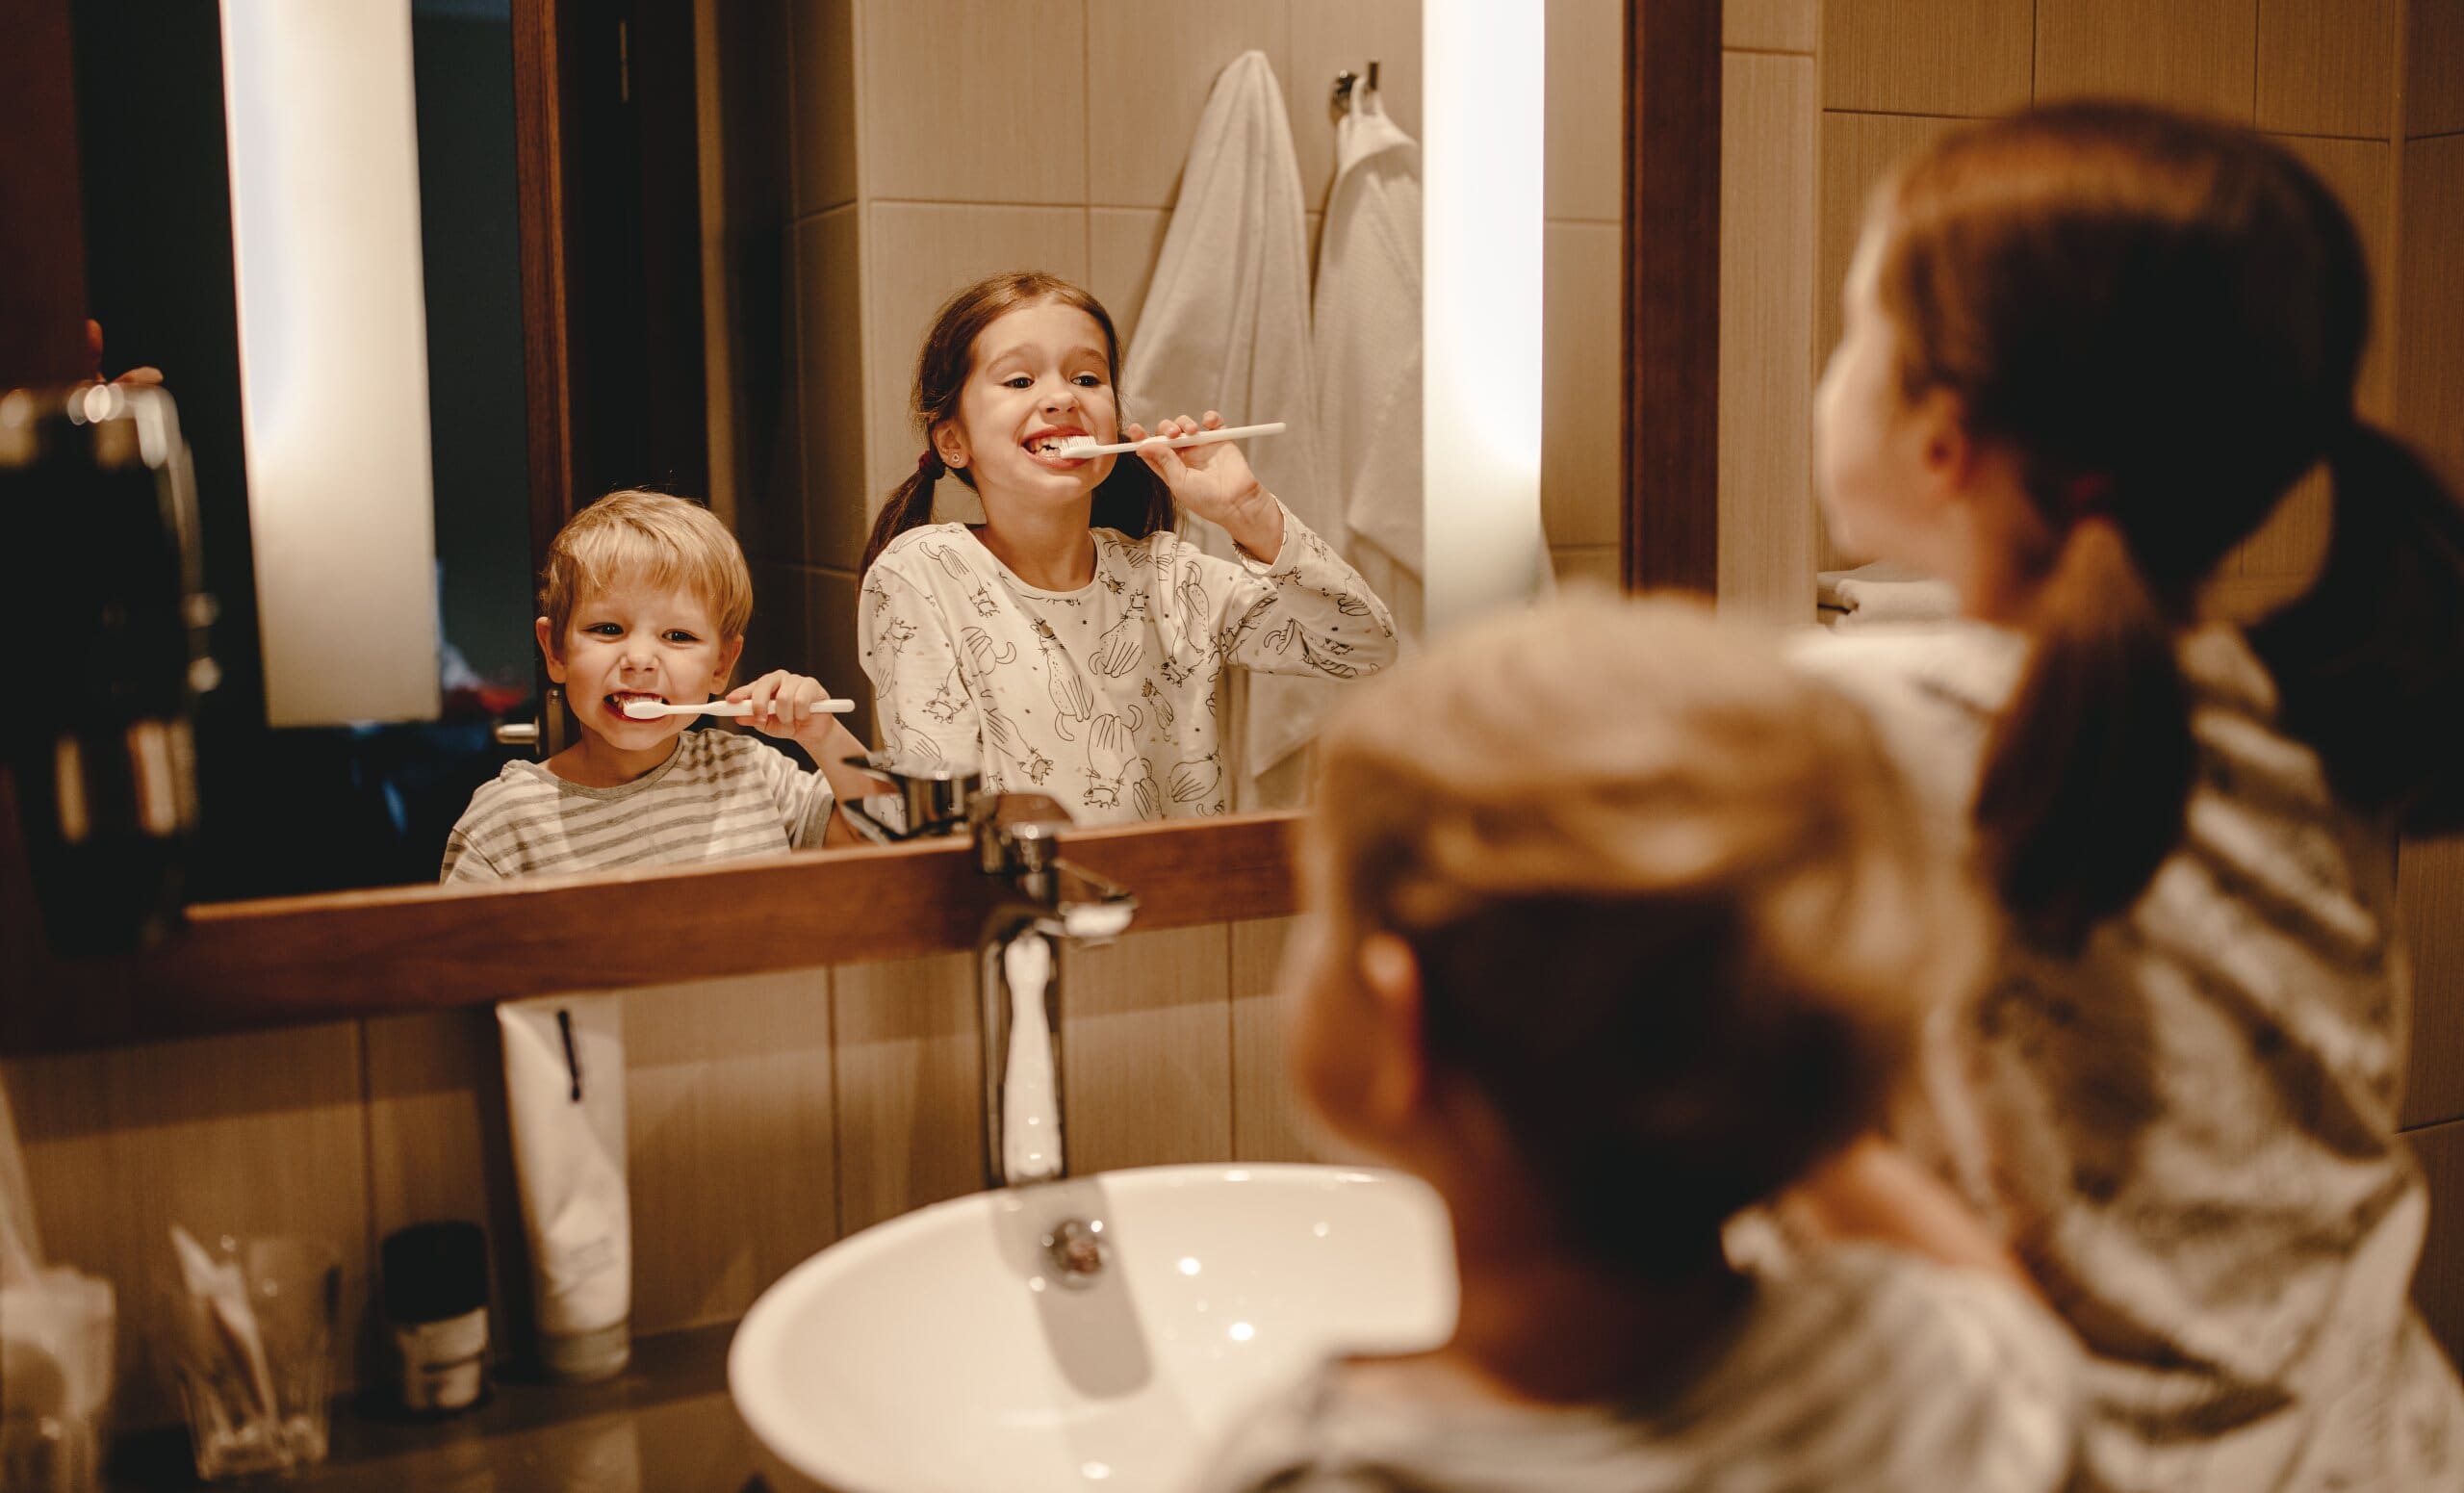 Young girl and boy burshing their teeth in a bathroom mirror.